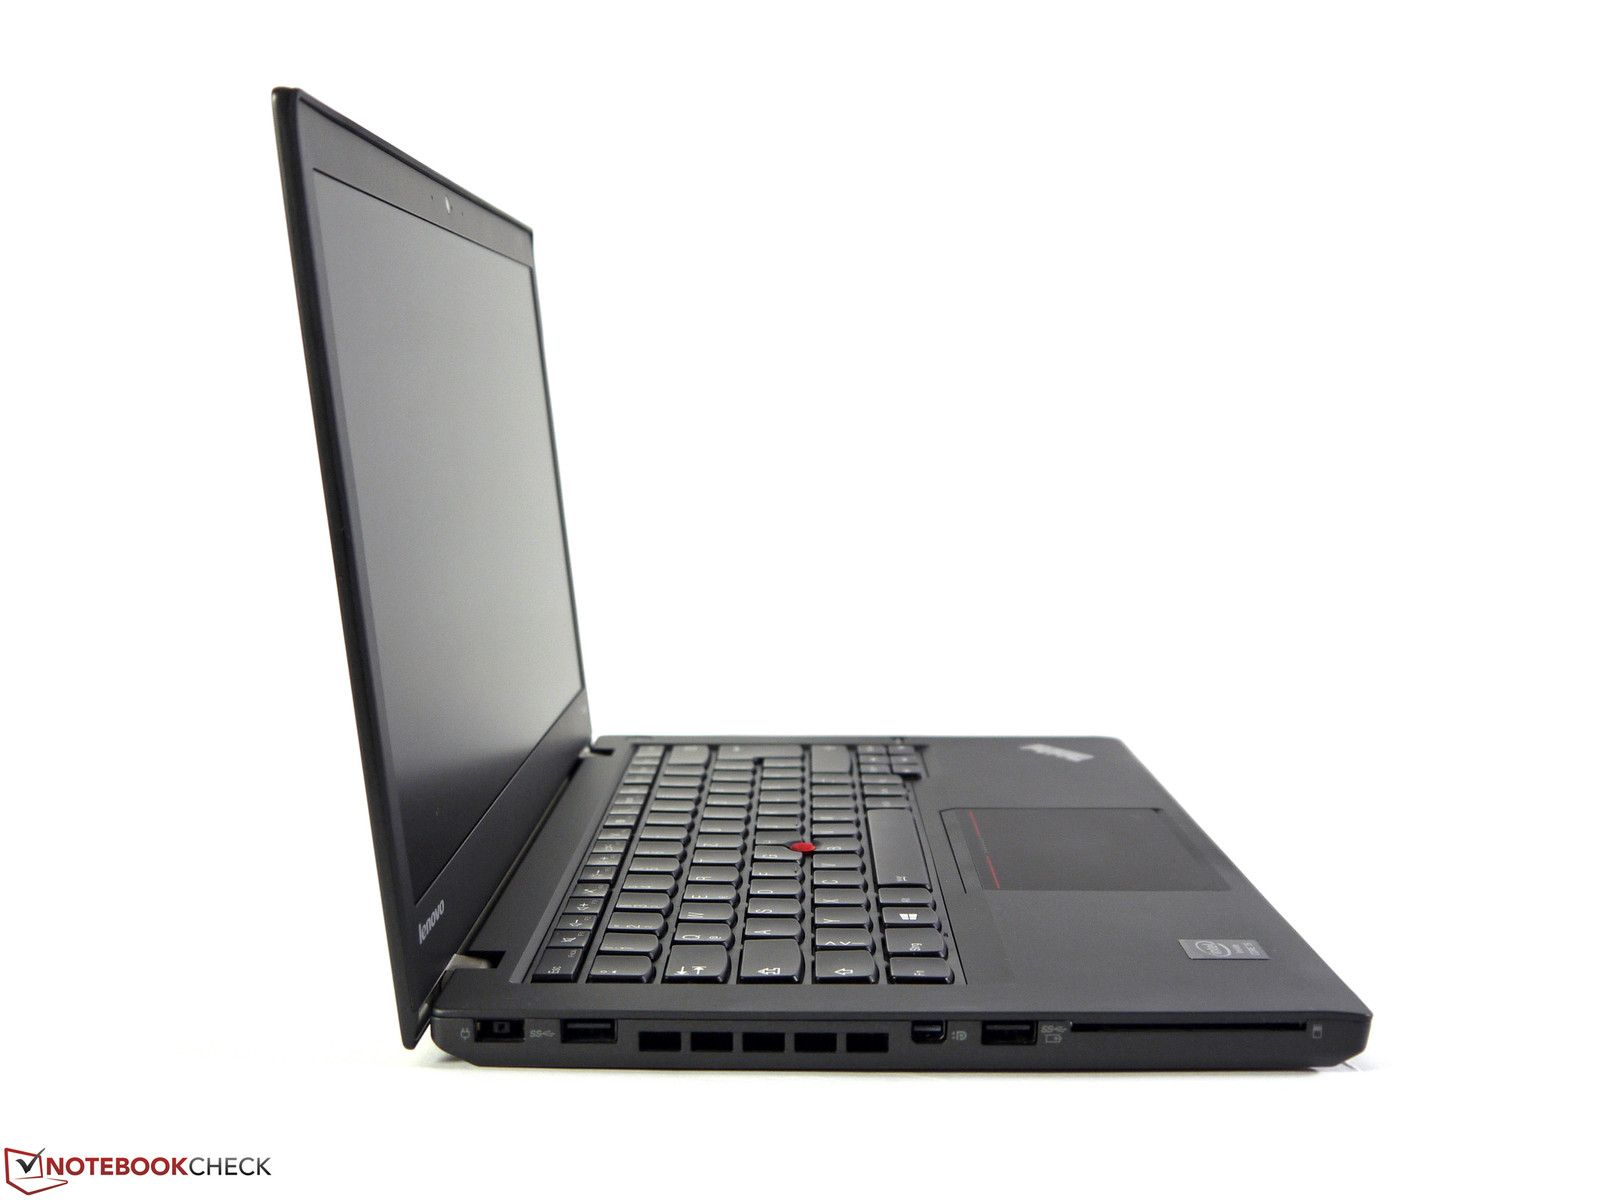 Lenovo thinkpad t440 i5 review hyundai kia 25614 26100